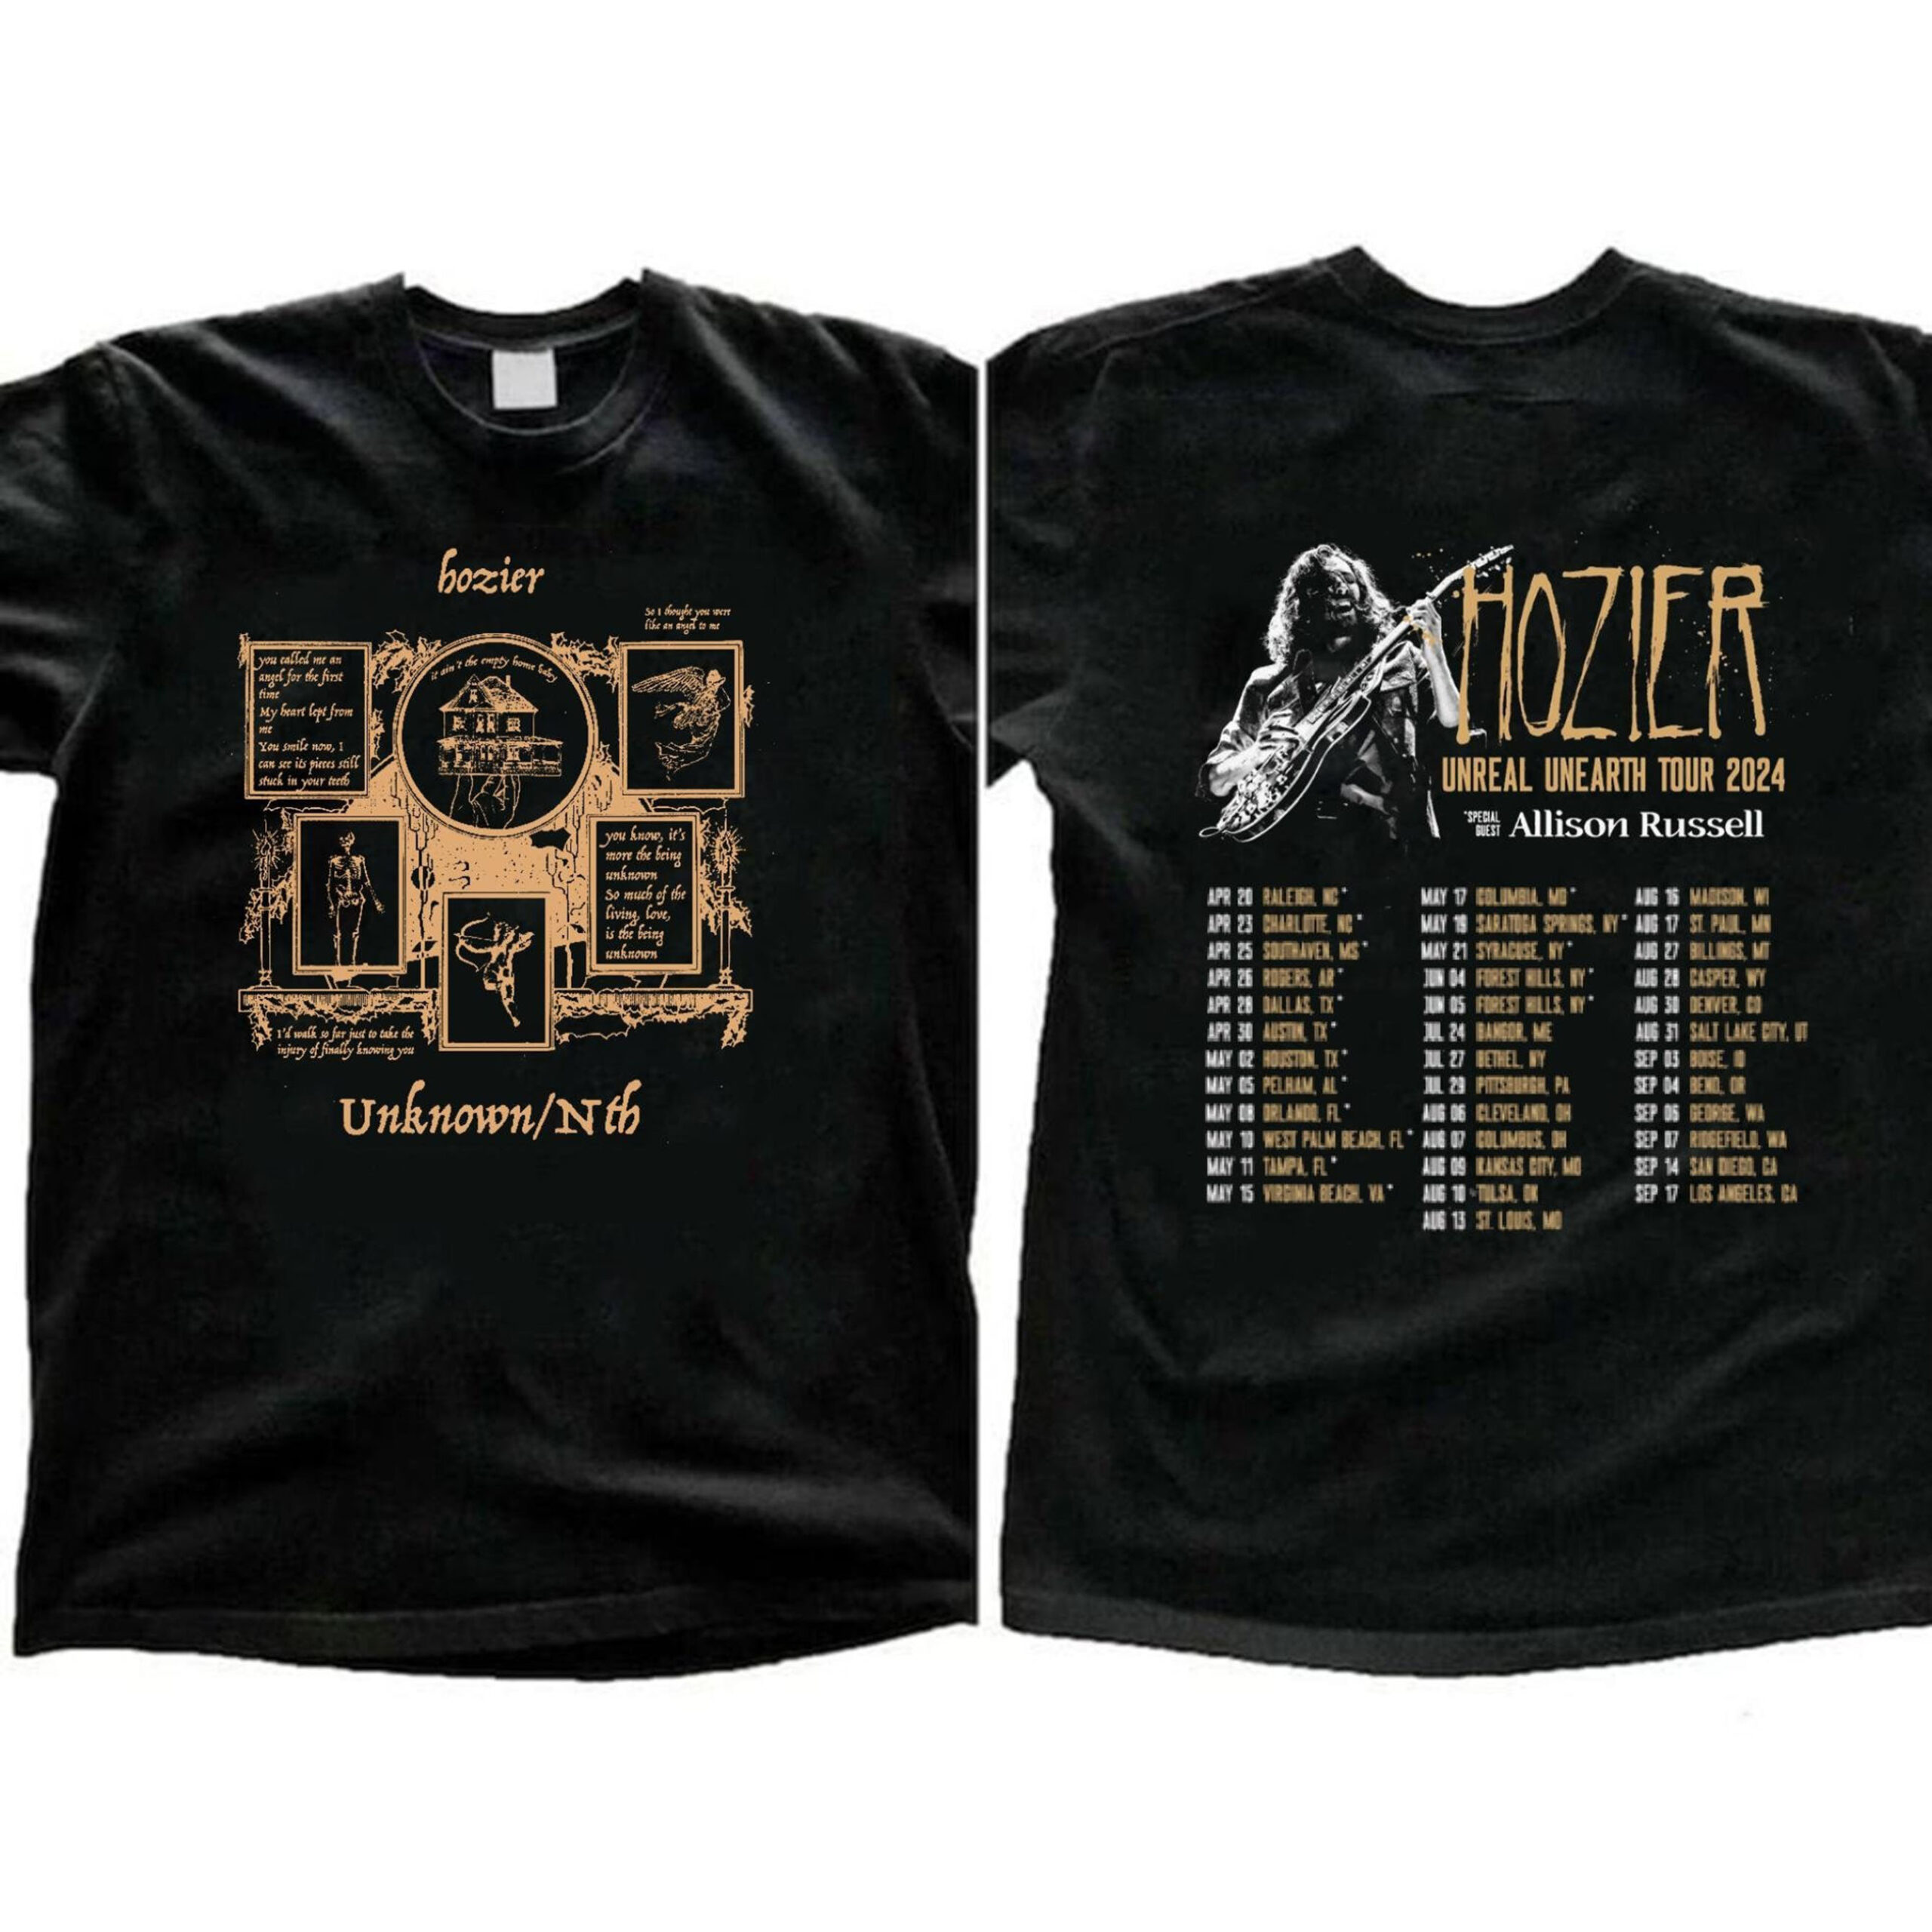 Hozier Tour 2024 Shirt, UnReal UnEarth Album Hozier 2024 Tour Shirt